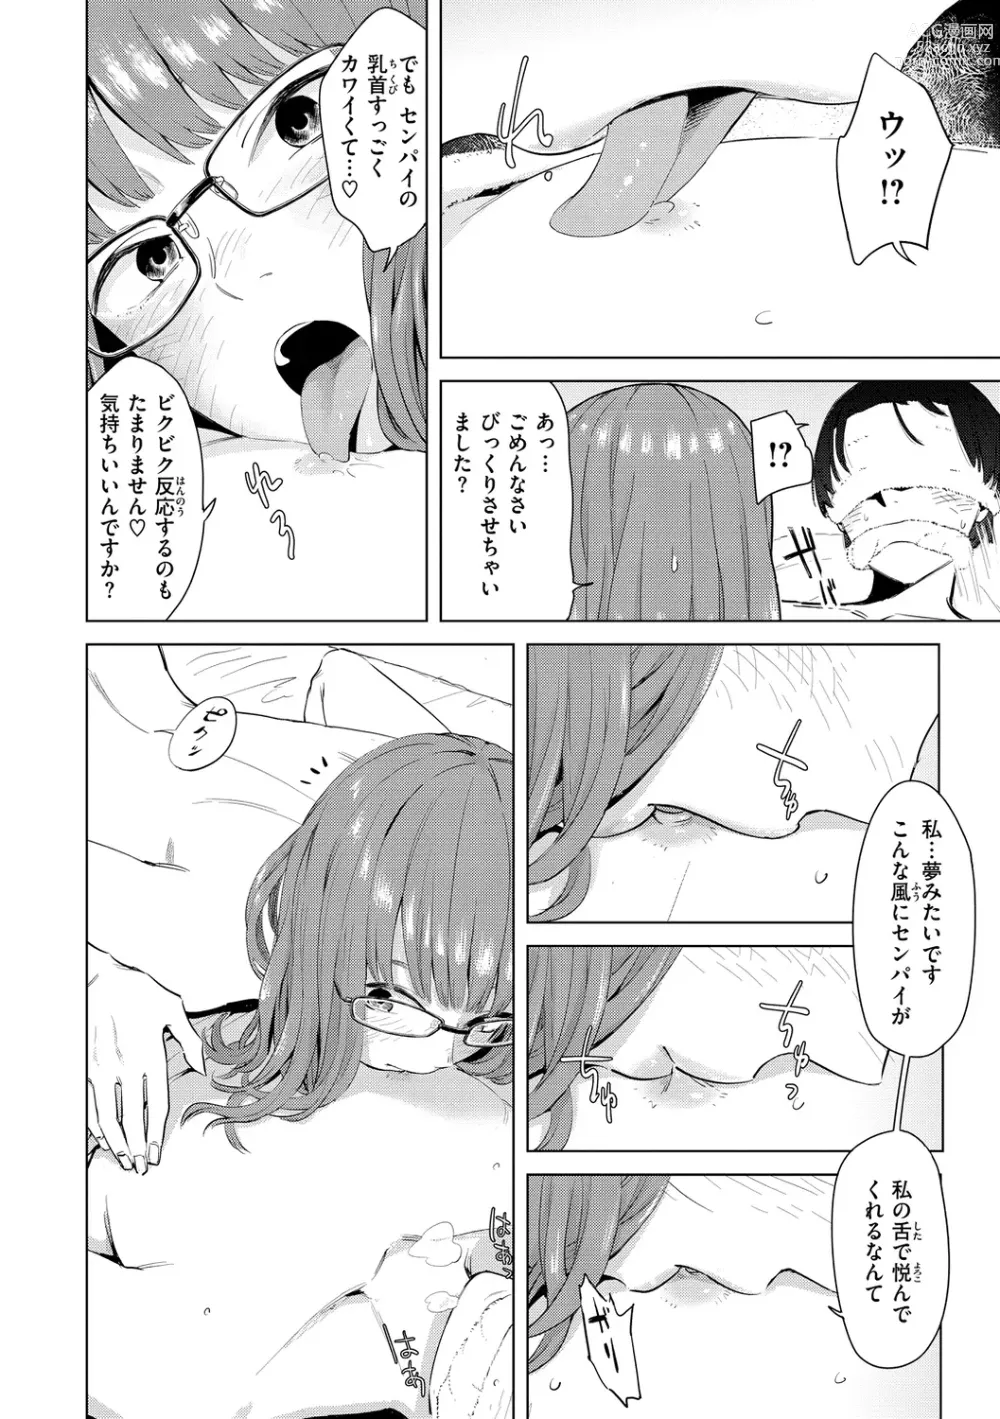 Page 10 of manga Yabai Onna